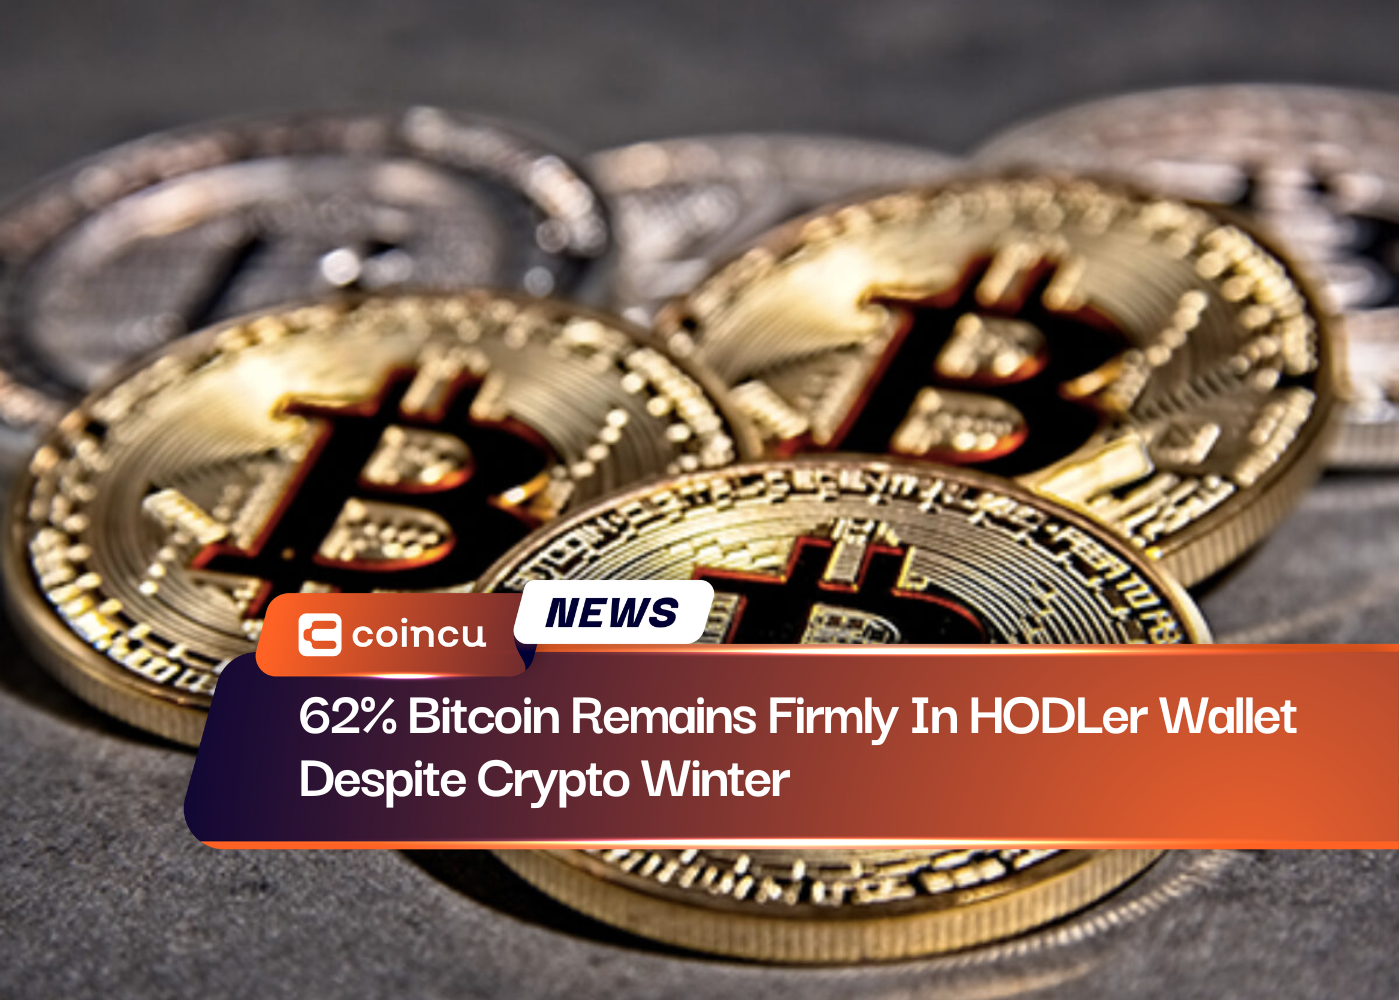 Bitcoin'in %62'si Kripto Kışına Rağmen HODLer Cüzdanında Sıkı Kaldı